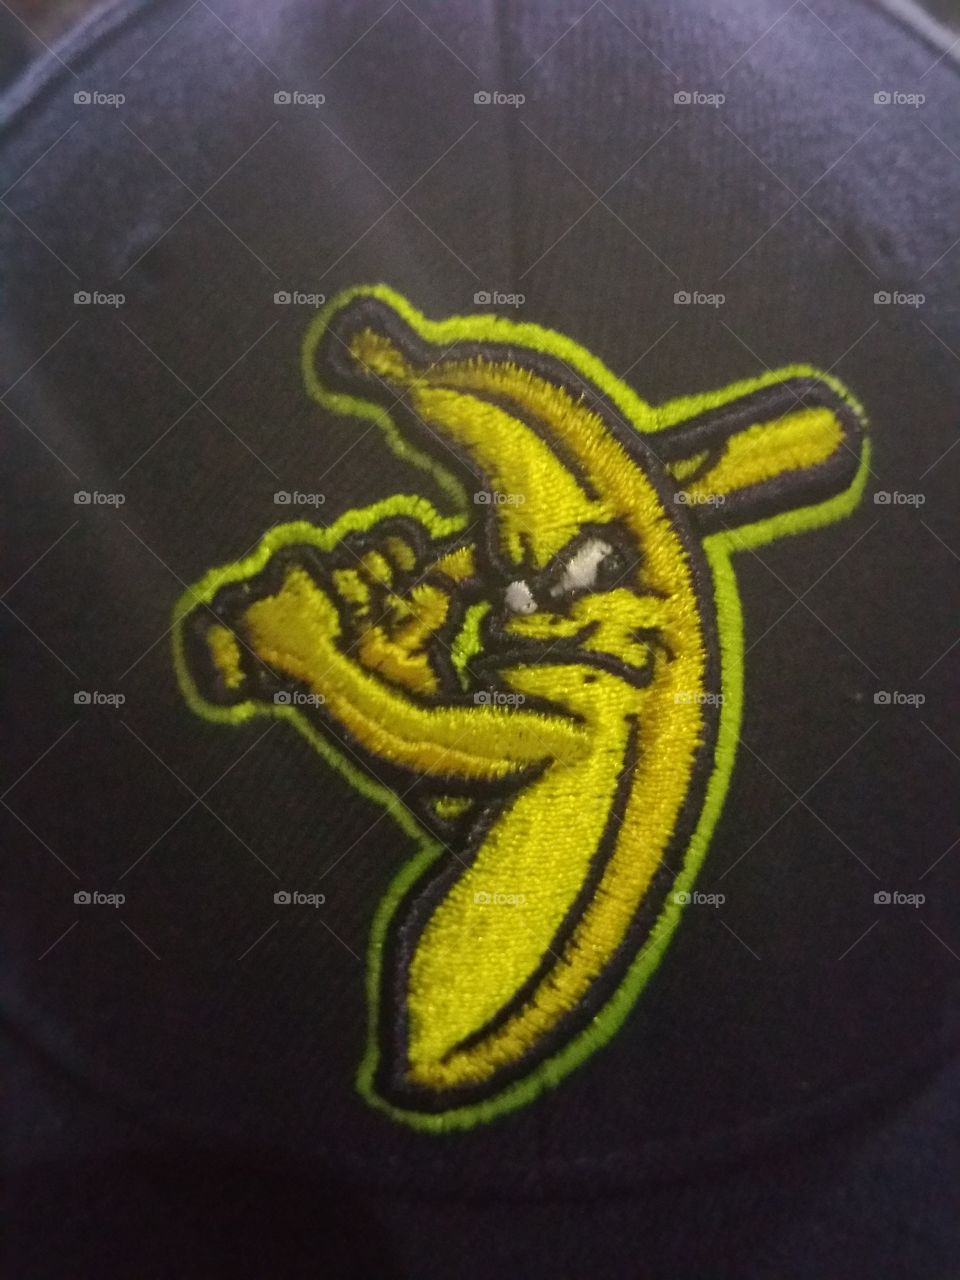 angry banana